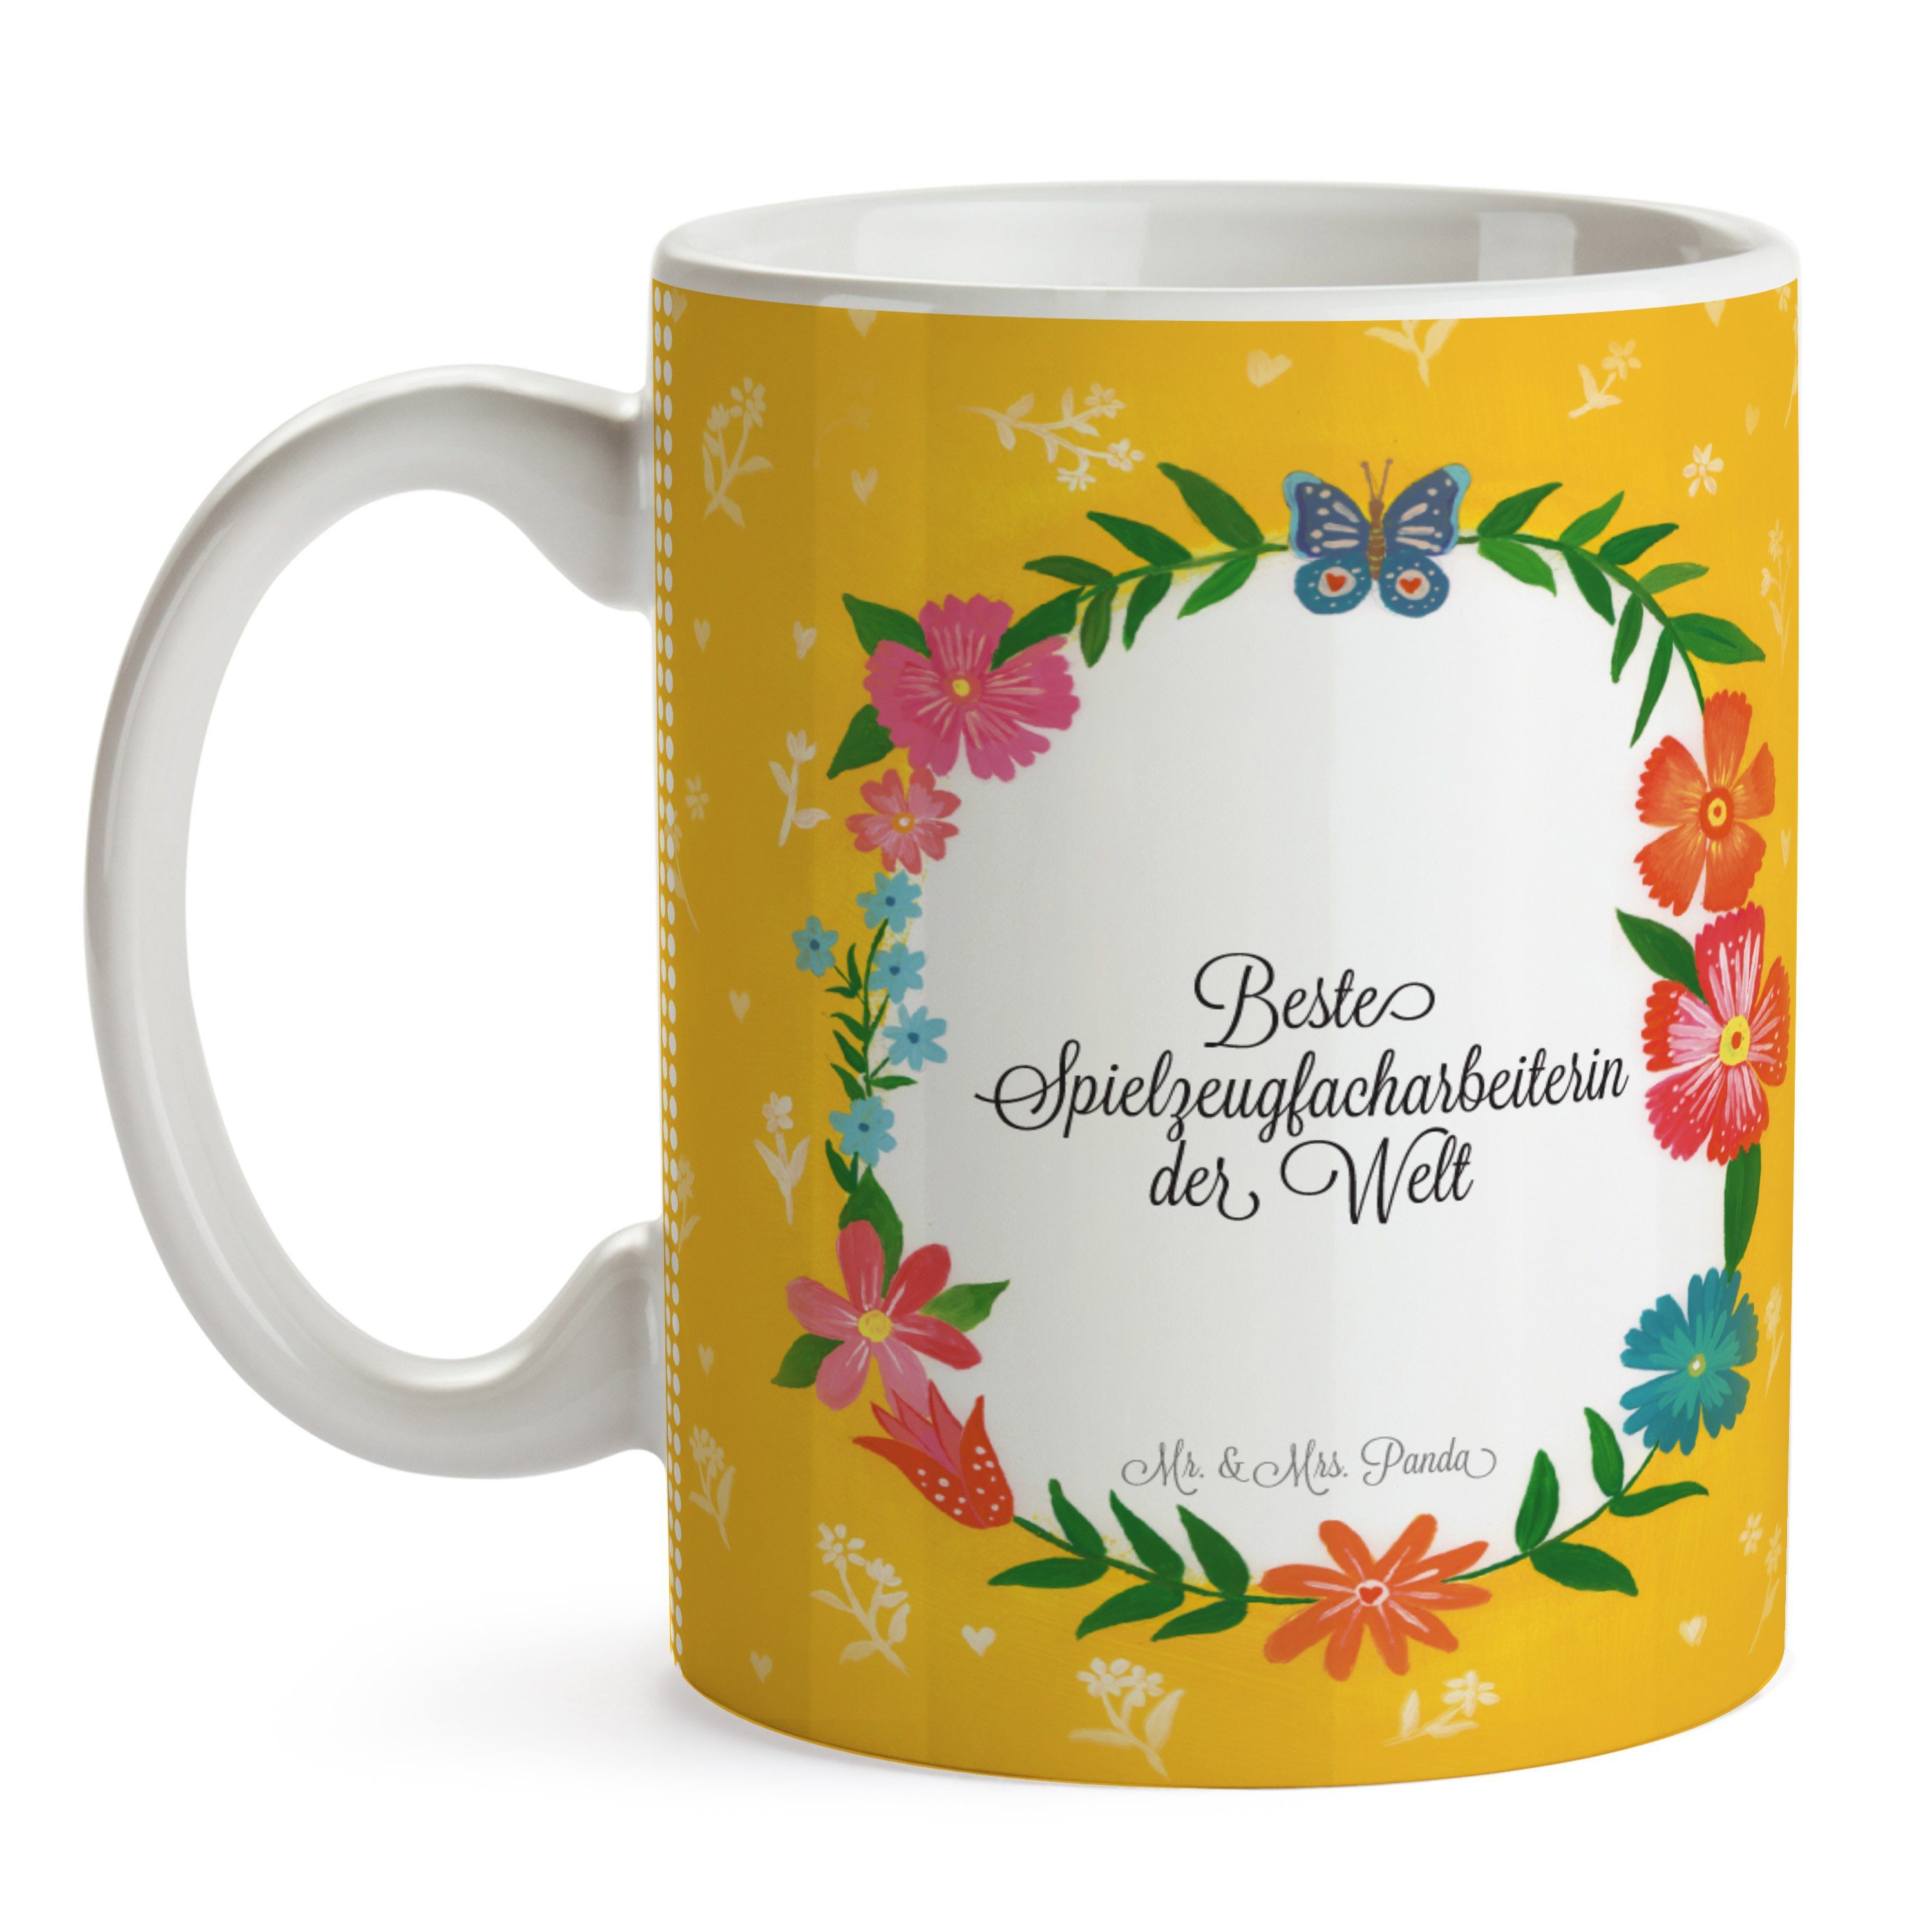 Mr. & Mrs. Gratulation, Geschenk, Studium, Panda Tasse Keramik Tasse, - Spielzeugfacharbeiterin Teet